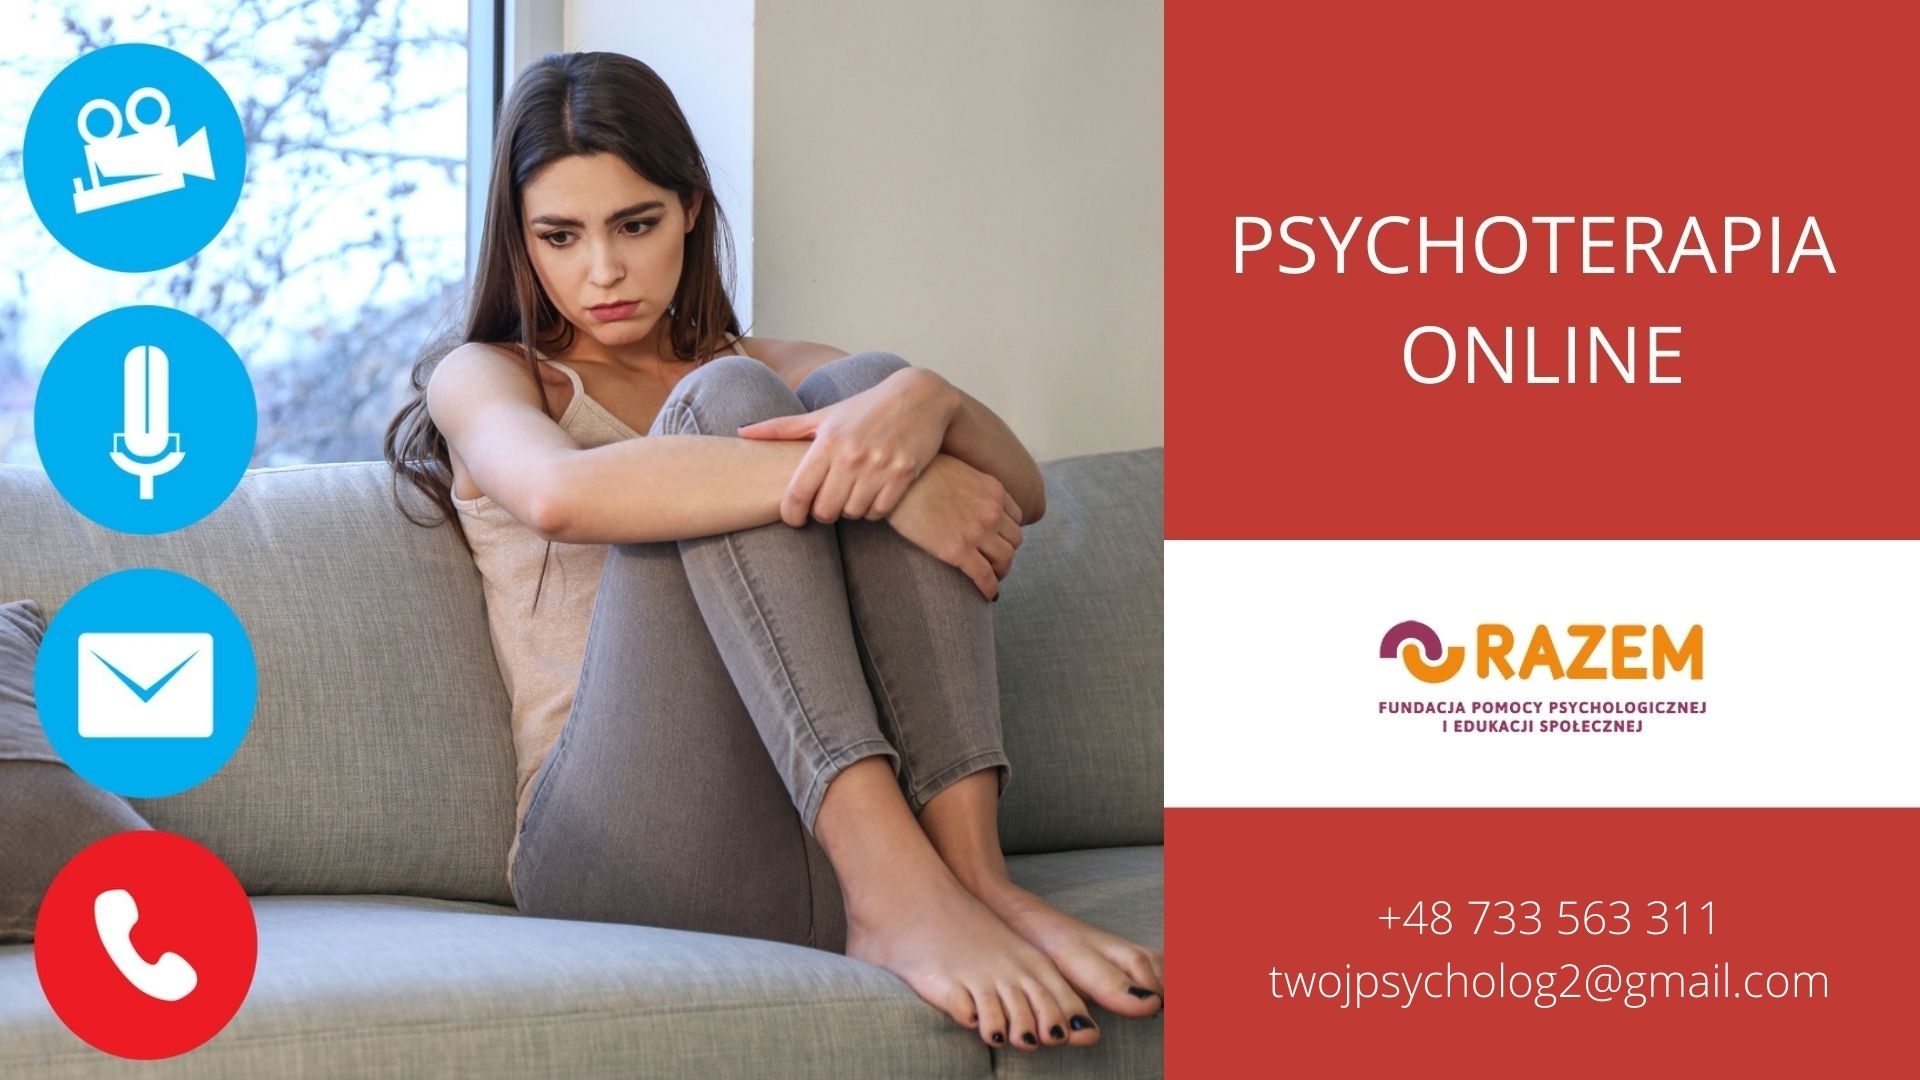 Psychoterapia online, konsultacje psychologiczne online w języku polskim